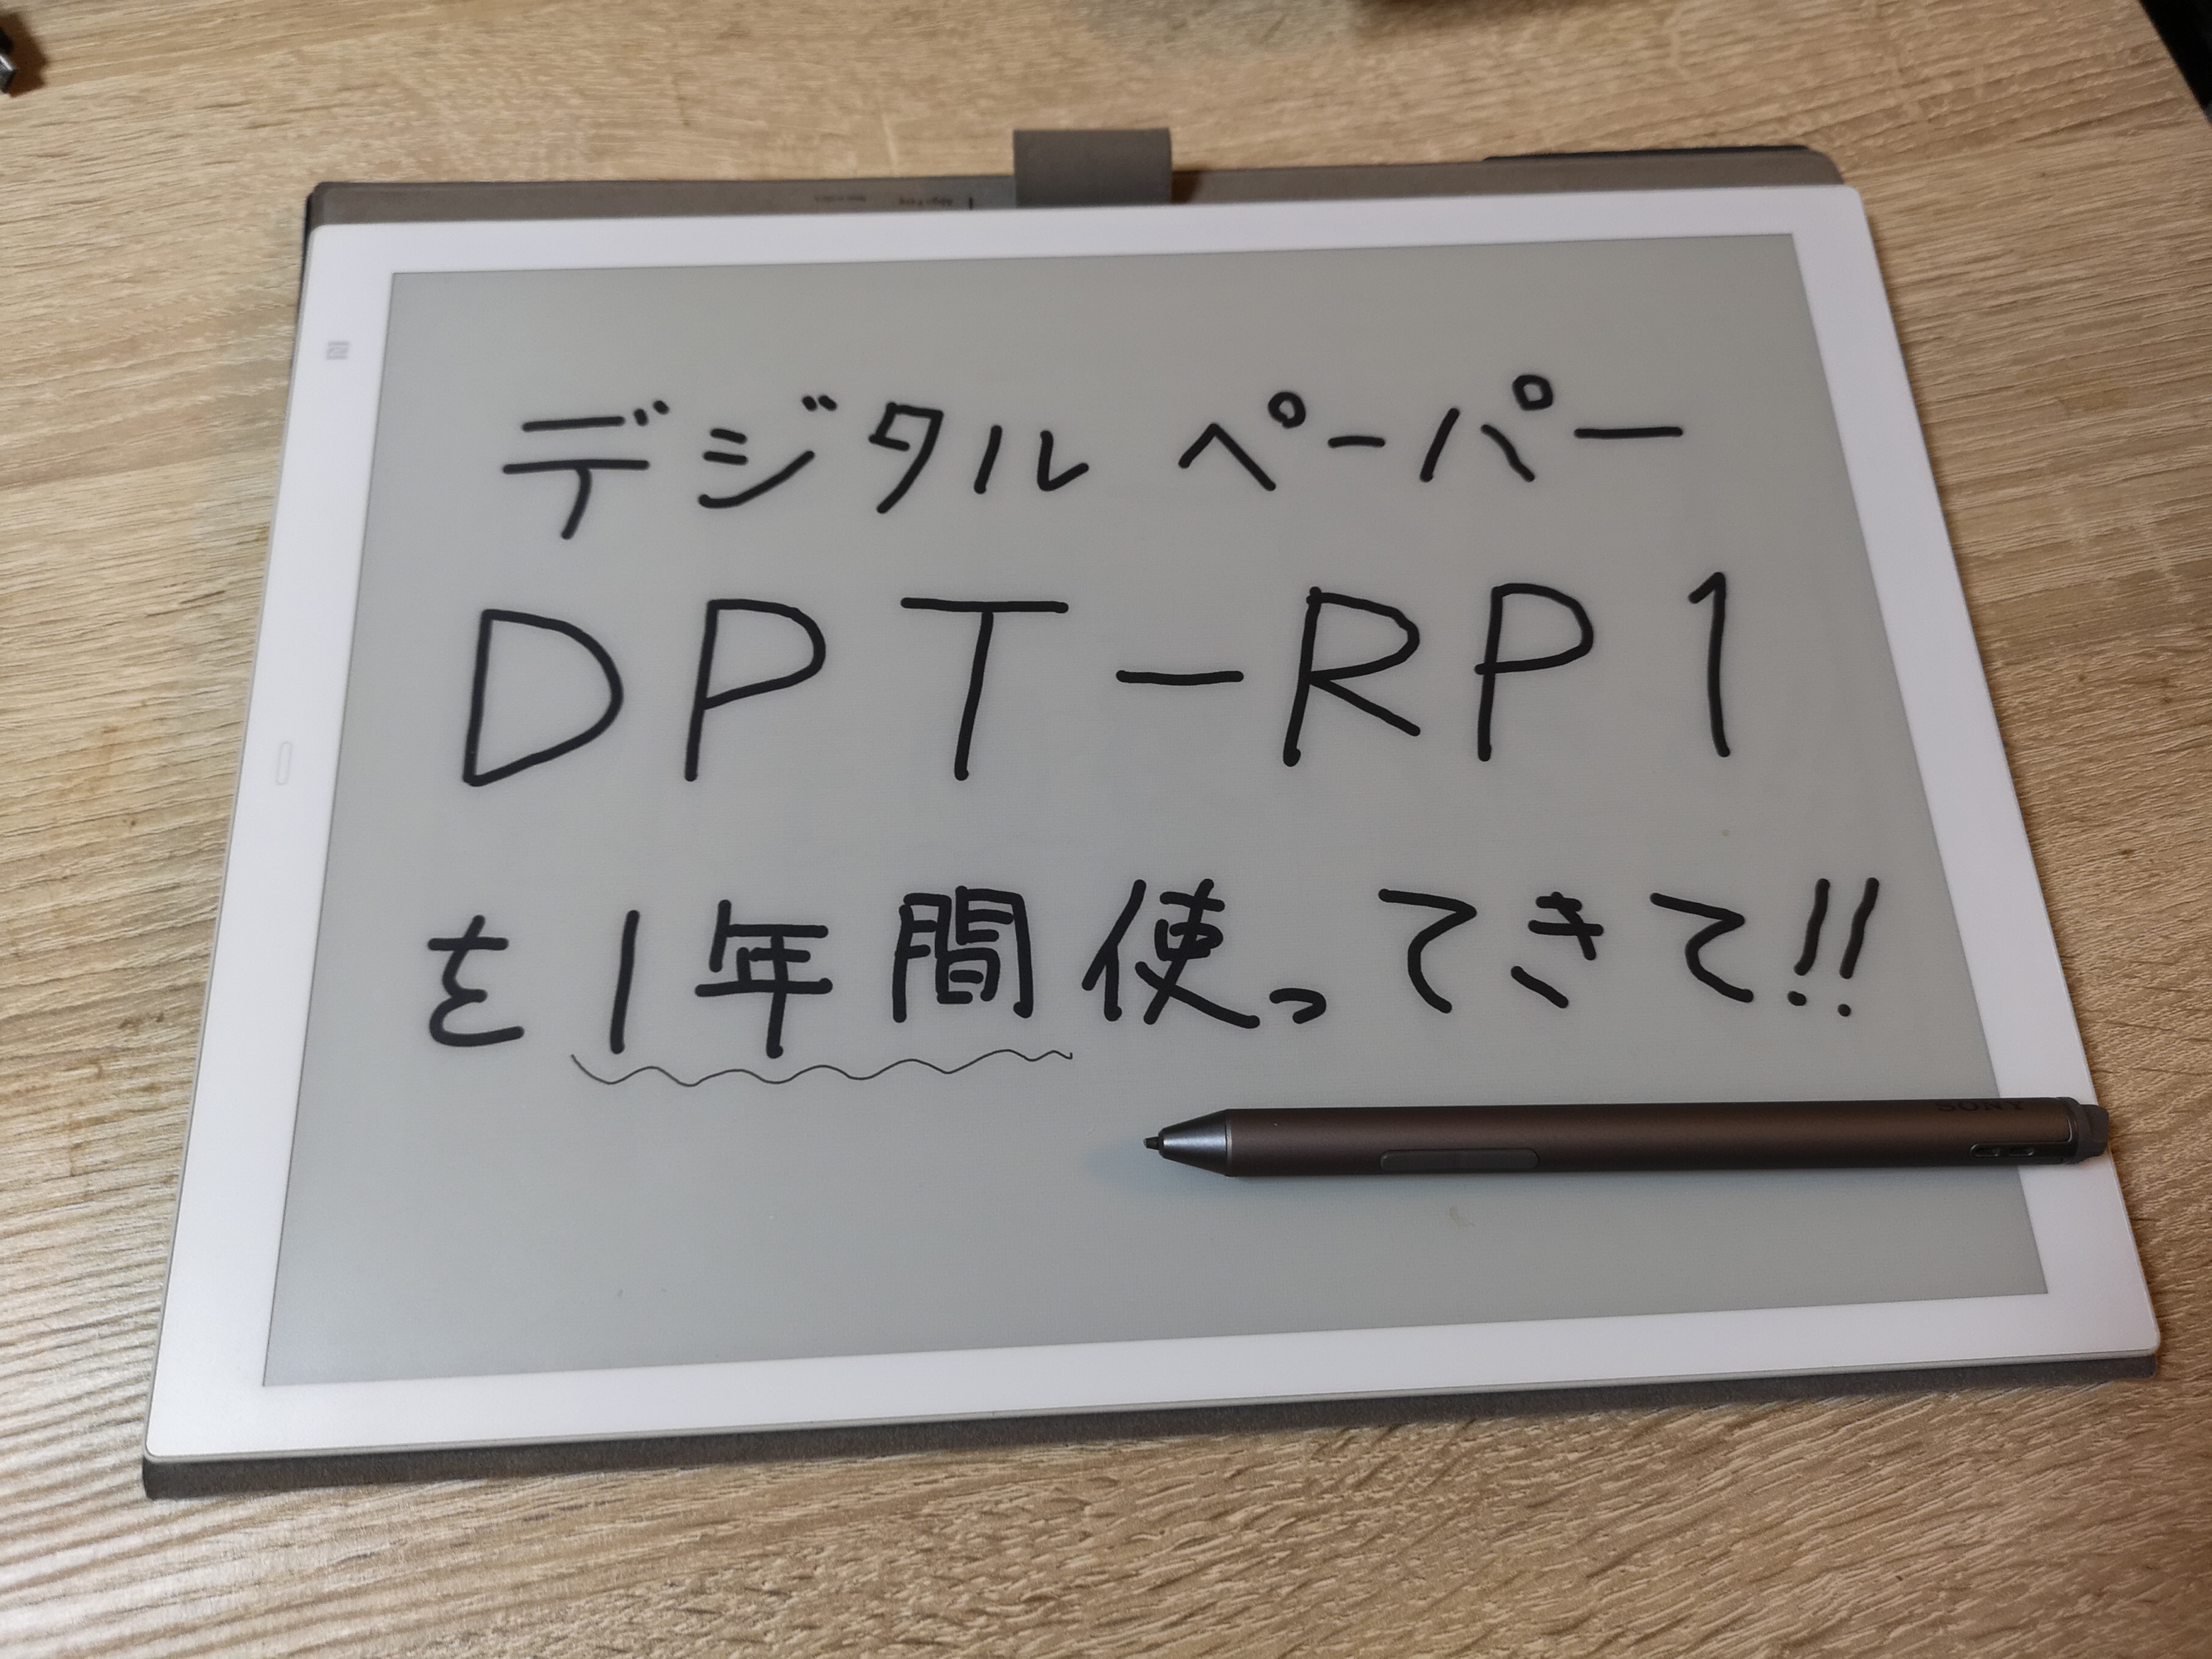 DPT-RP1 1年レビュー】1年使って感じる、デジタルペーパーの完成度と安定感[DPT-CP1]